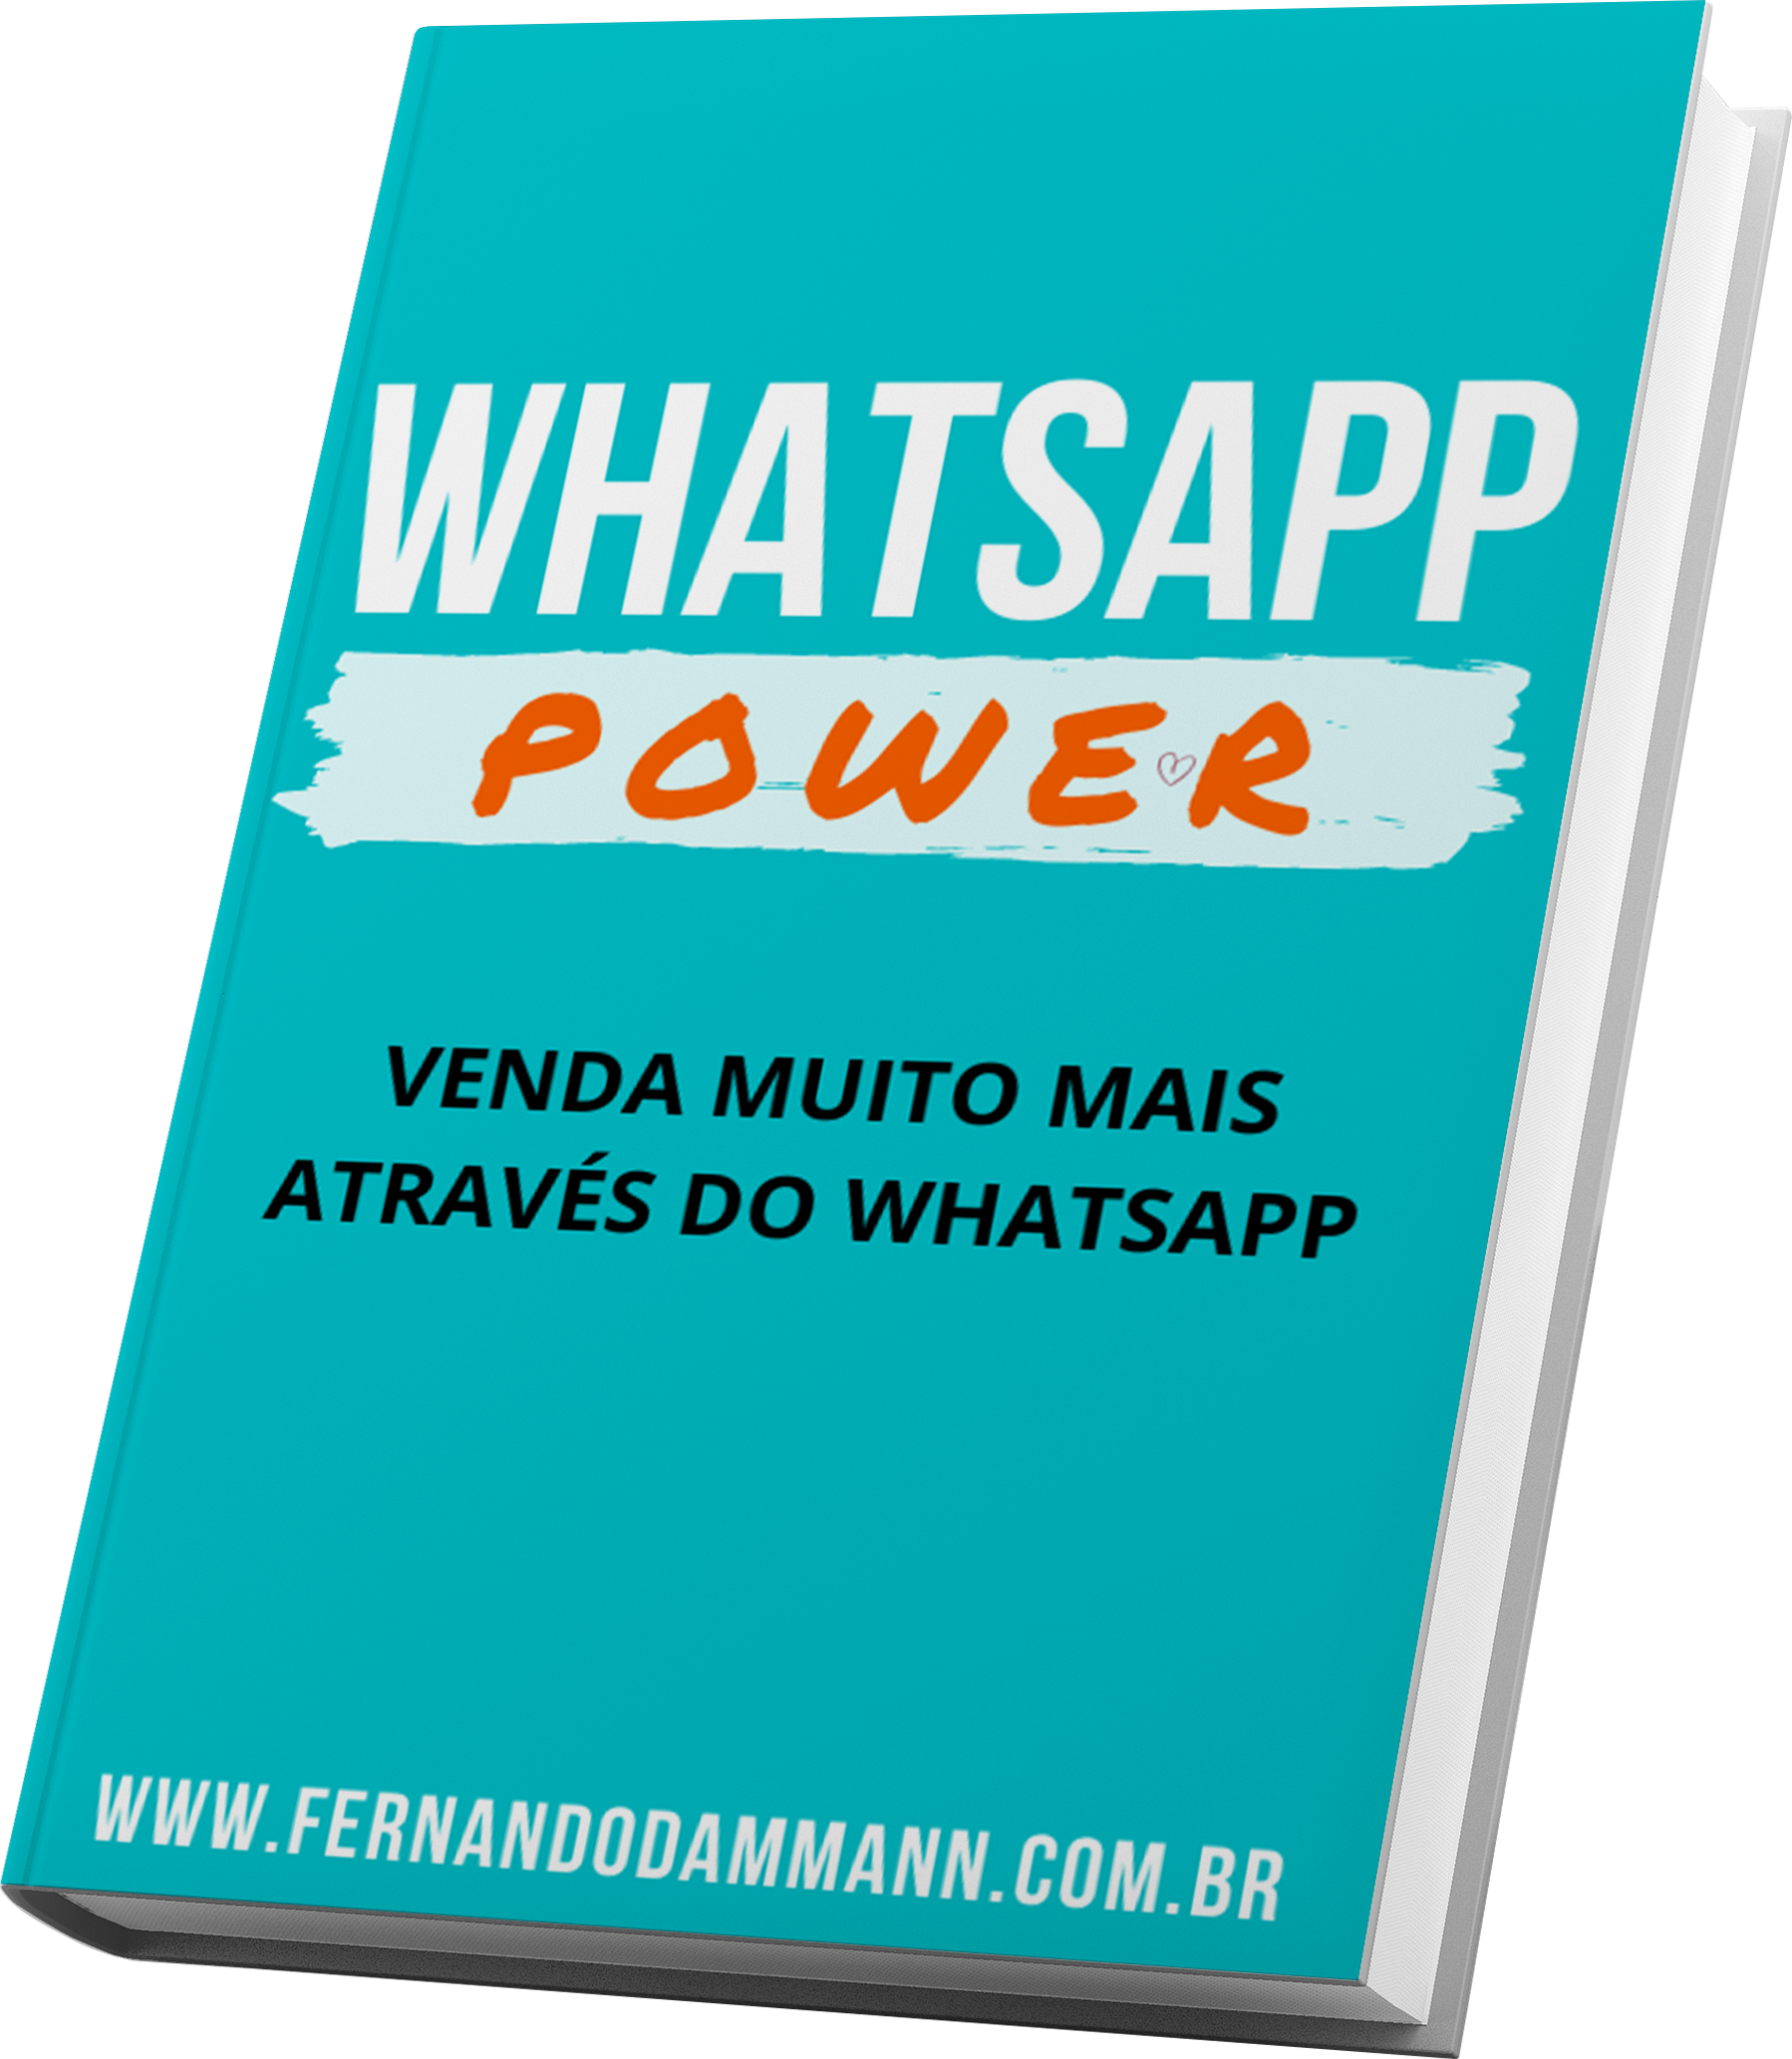 Whatsapp Power